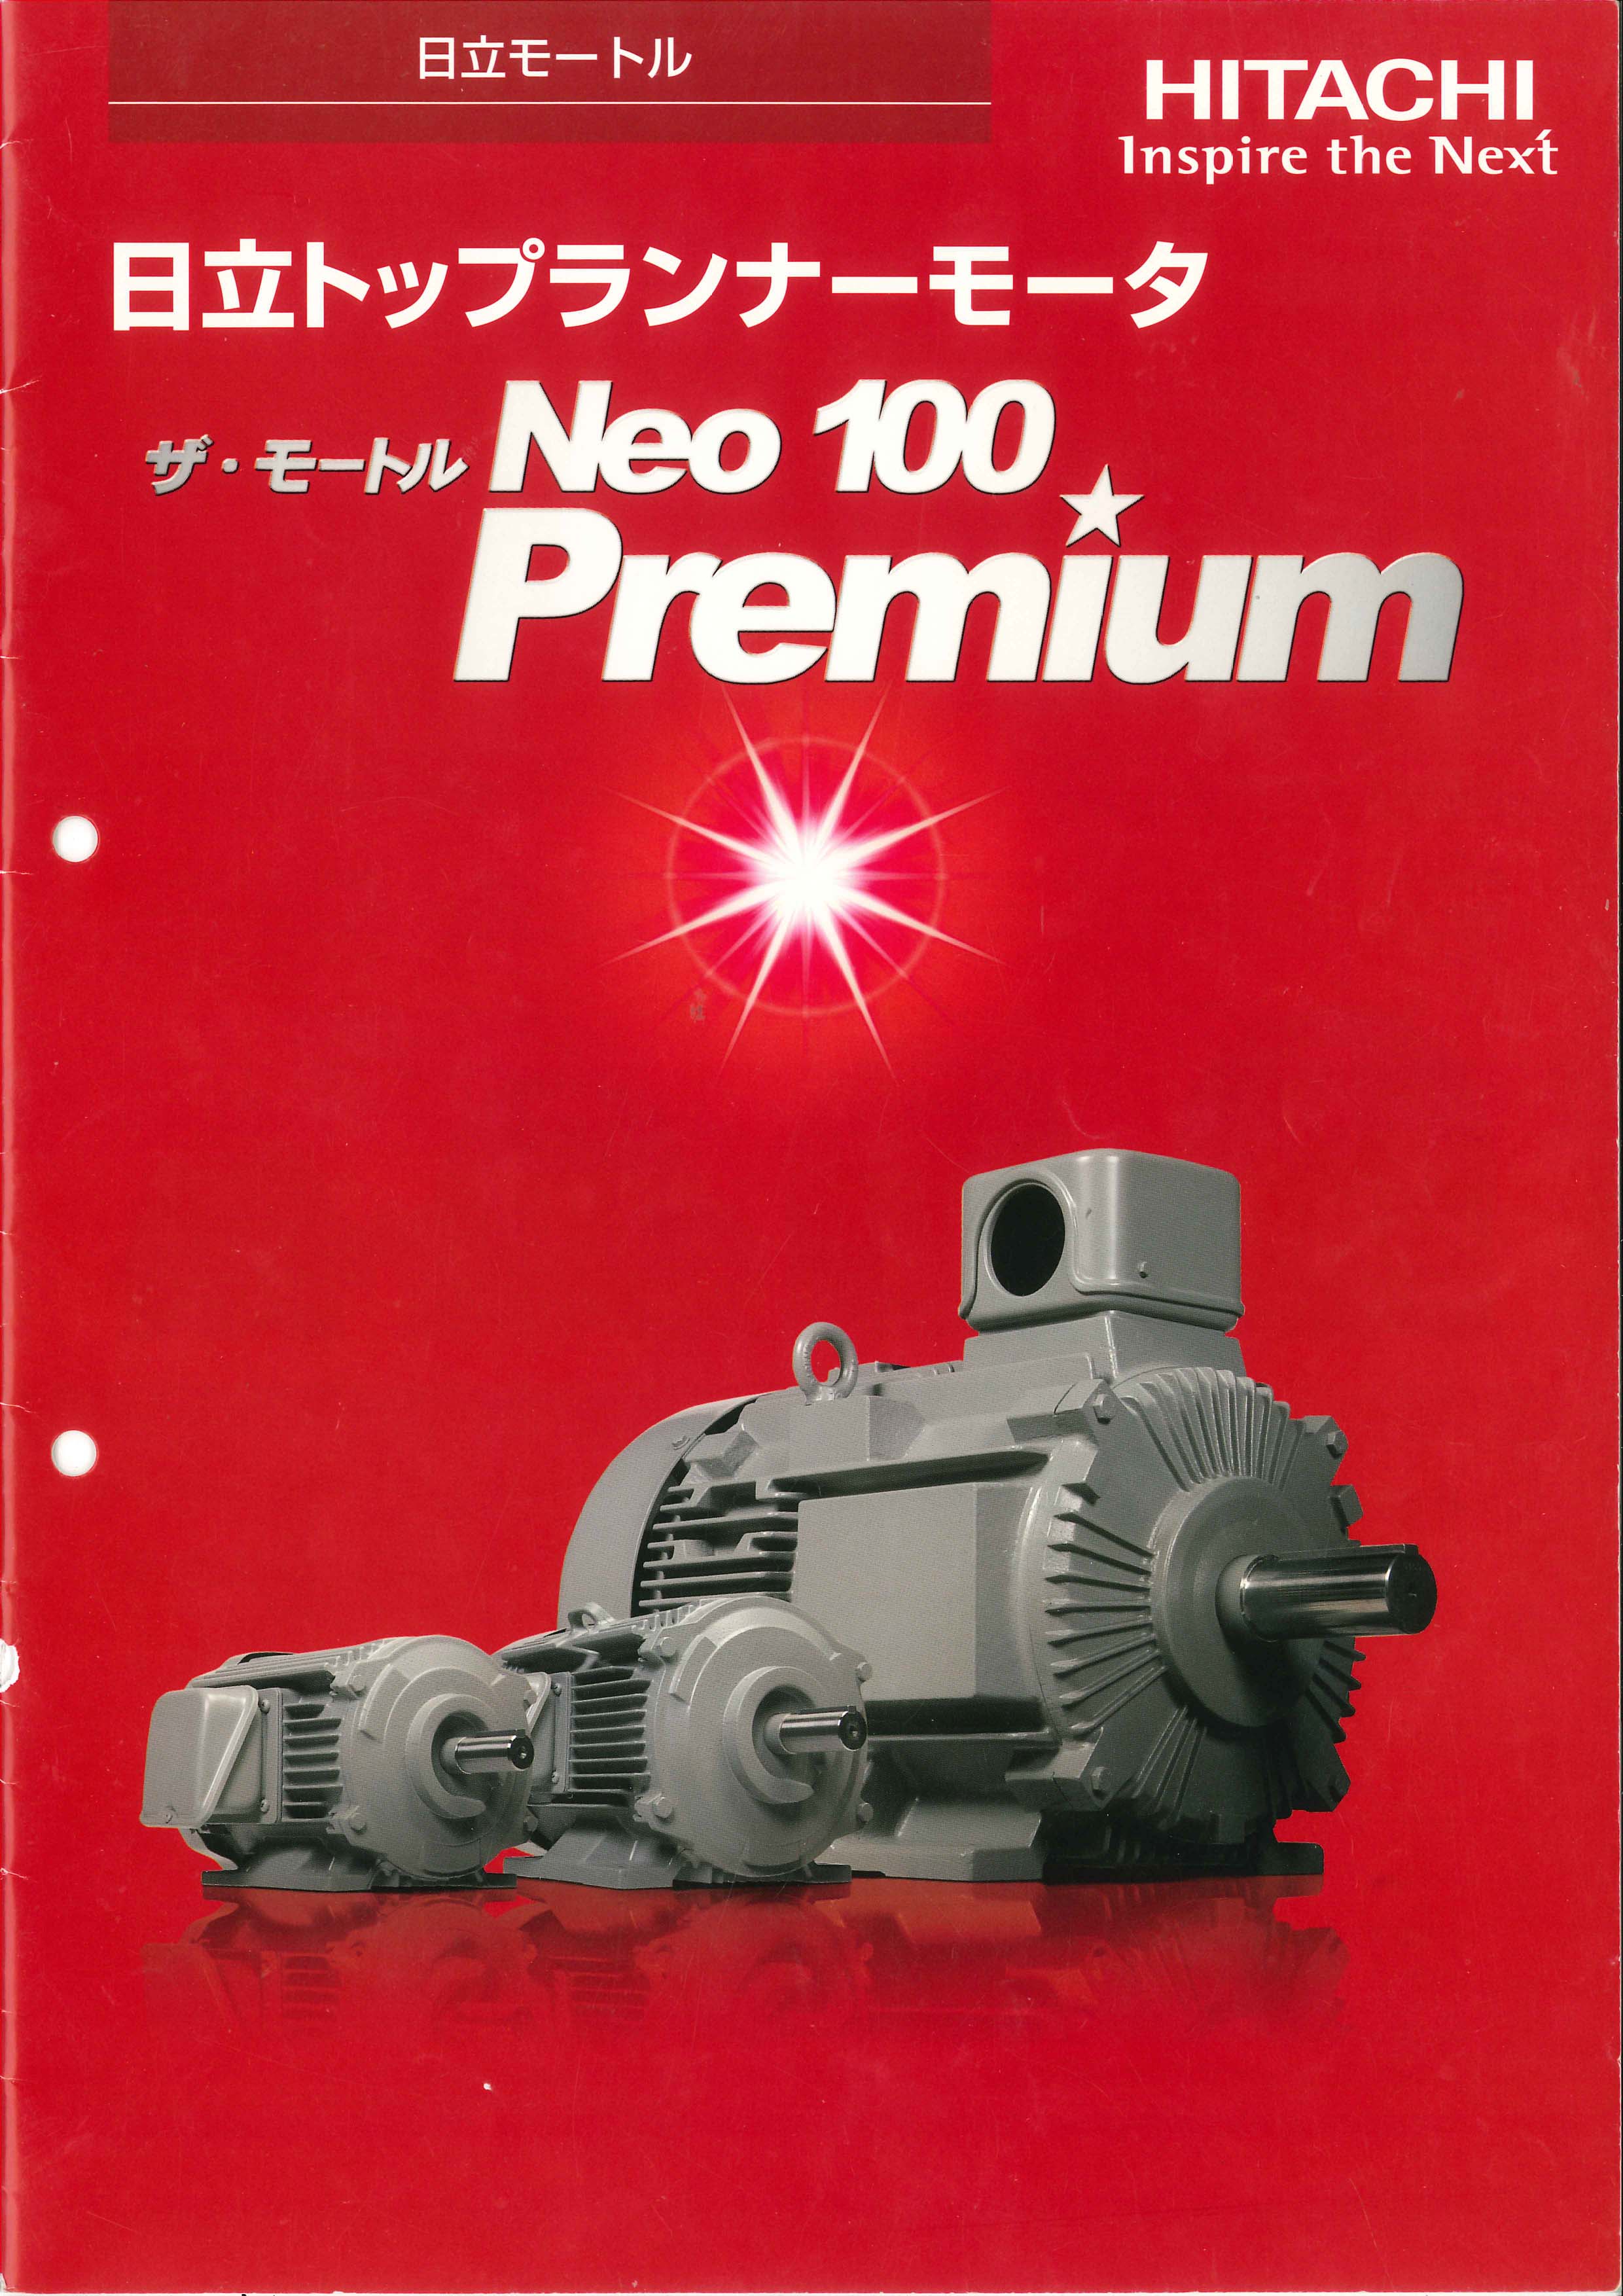 HITACHI - THE MOTOR NEO 100 PREMIUM